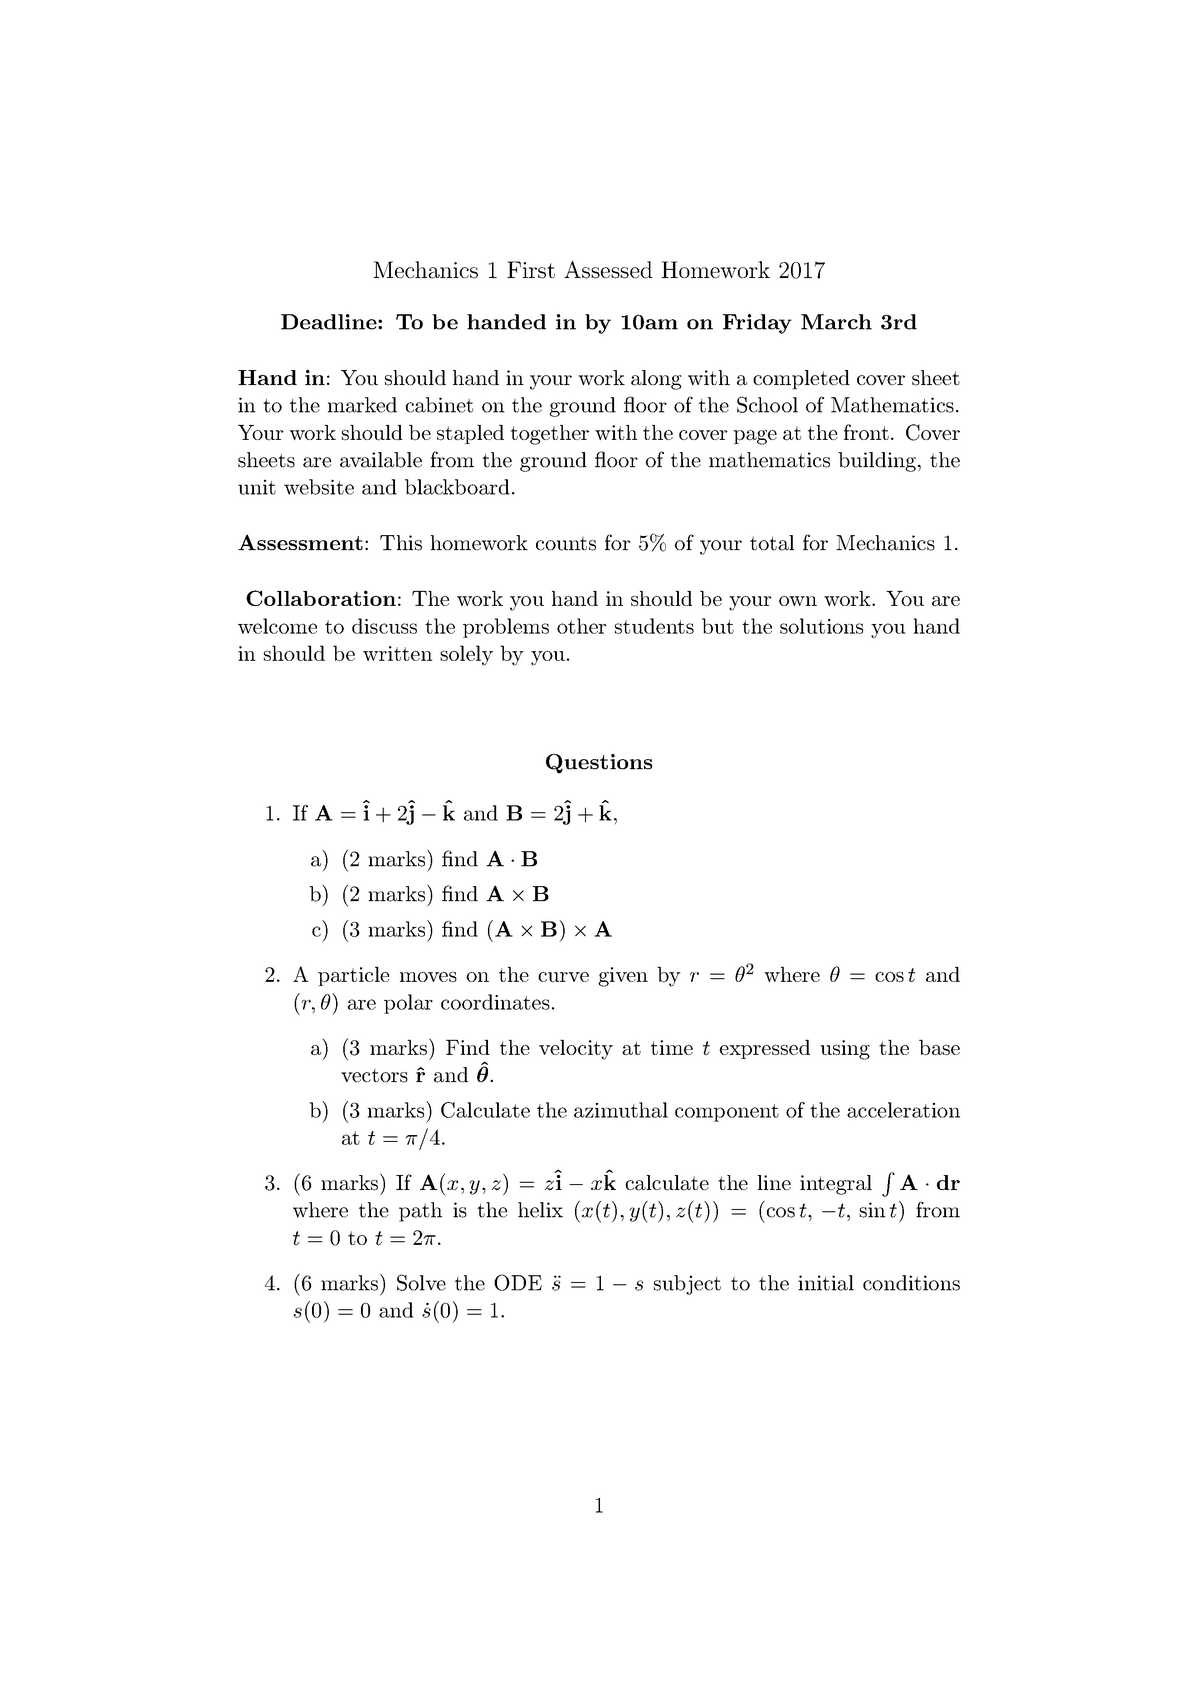 Math 16 17 Assignment 1 Mechanics First Assessed Homework 17 Deadline Studocu